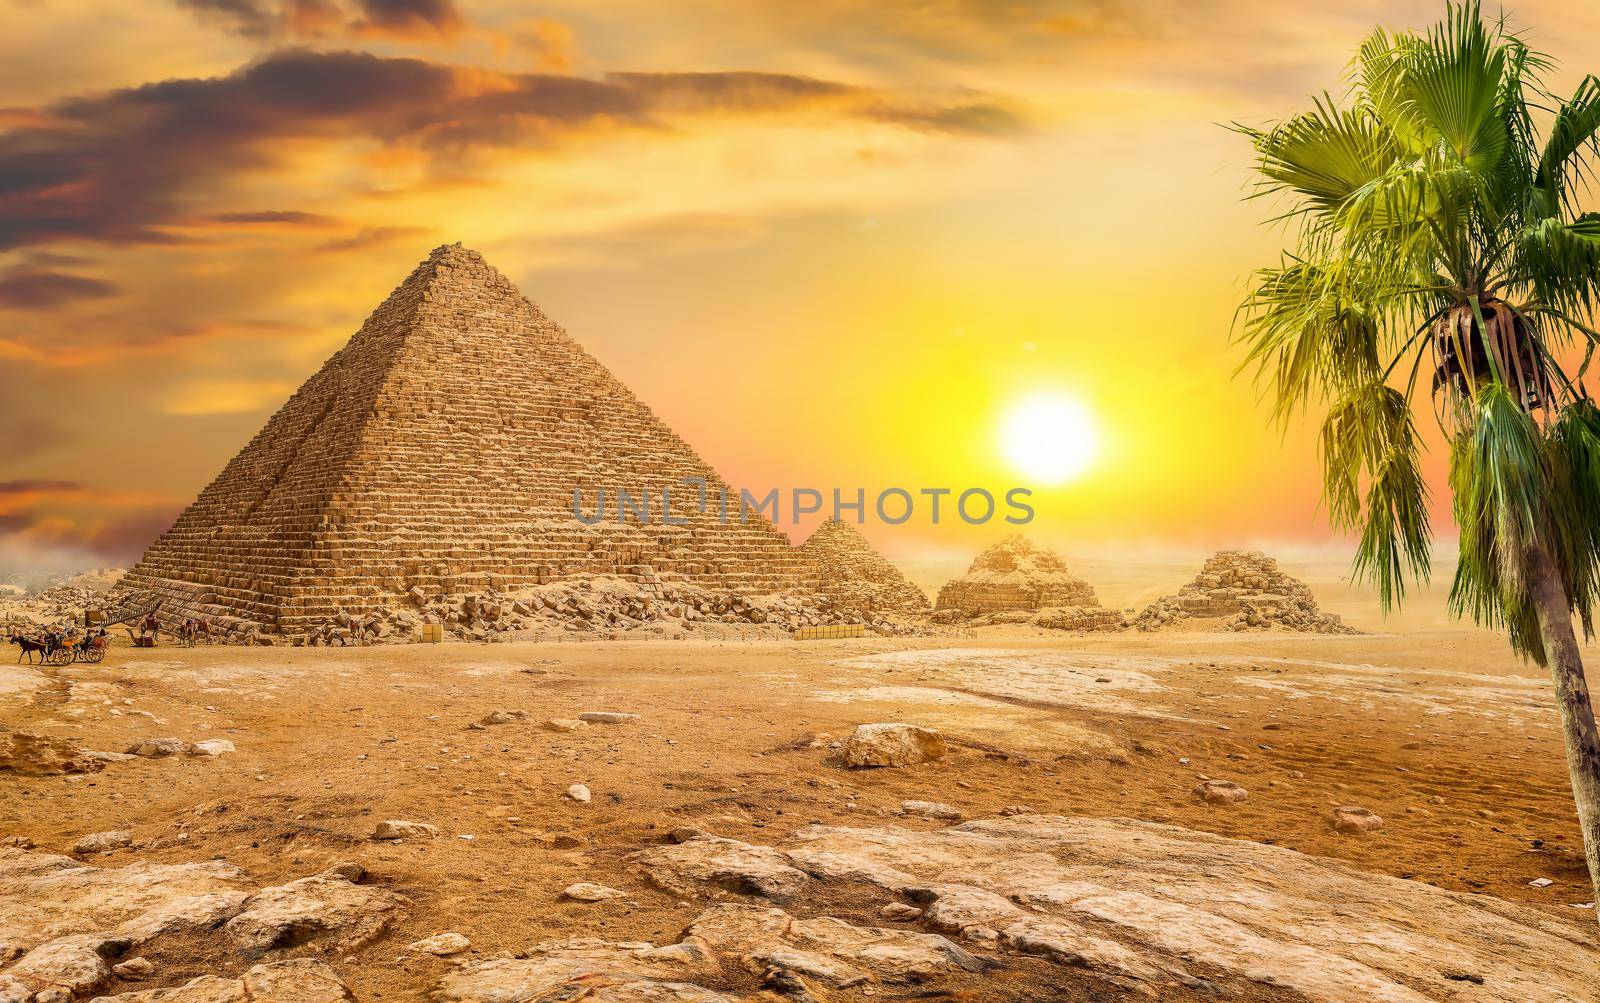 Great pyramids on Giza plateau at sunny sunrise